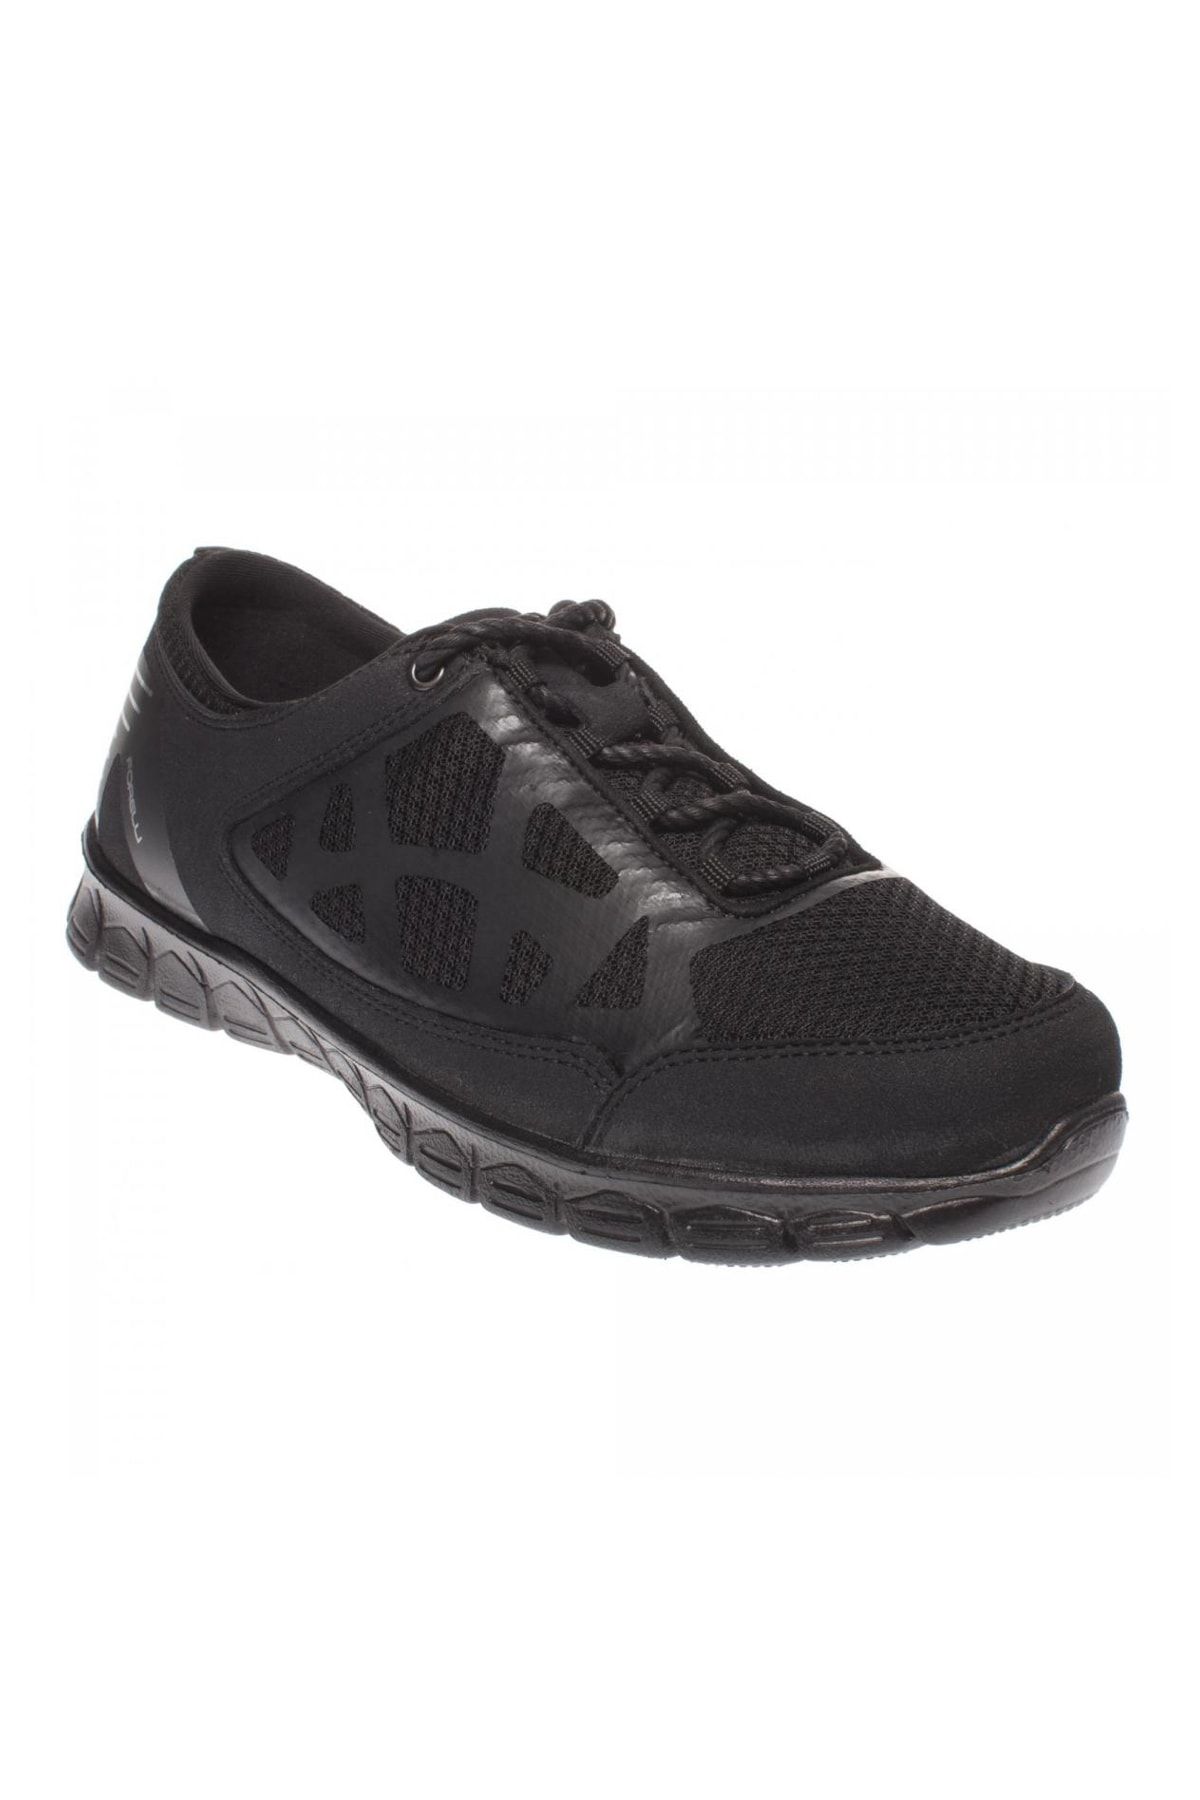 Forelli 61039-g Comfort Kadın Ayakkabı Siyah